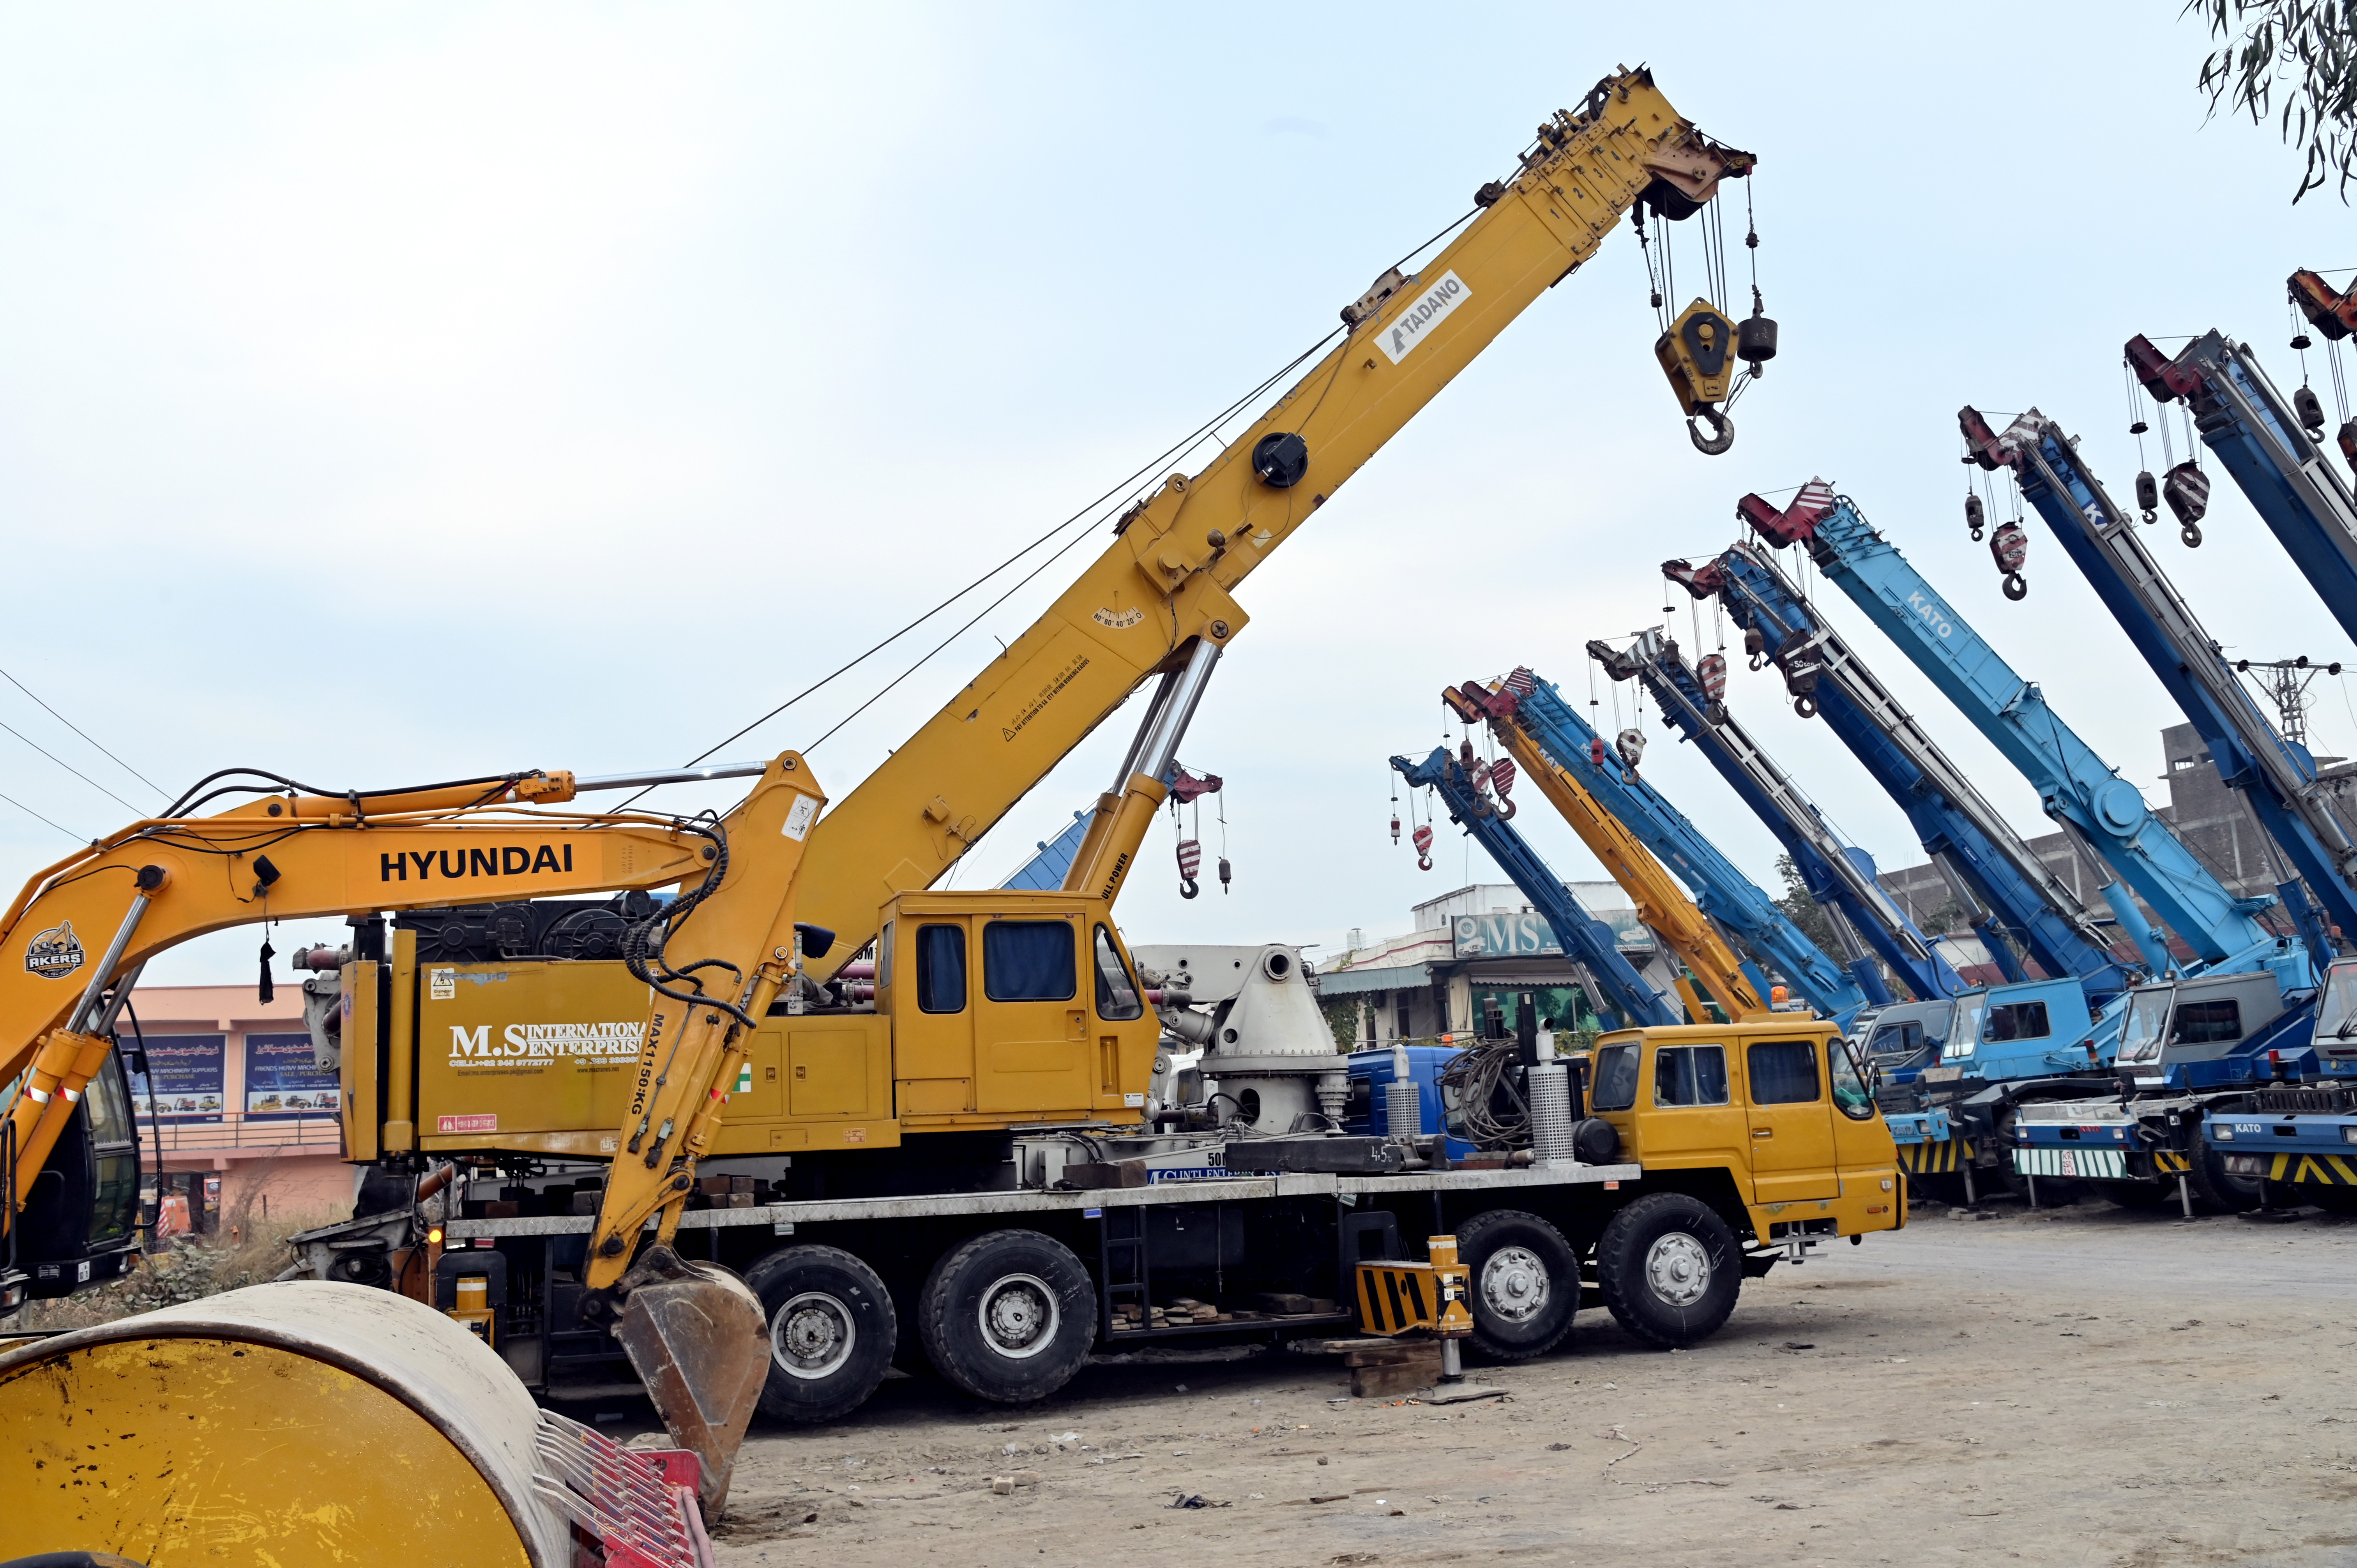 Customized heavy duty cranes of Hyundai